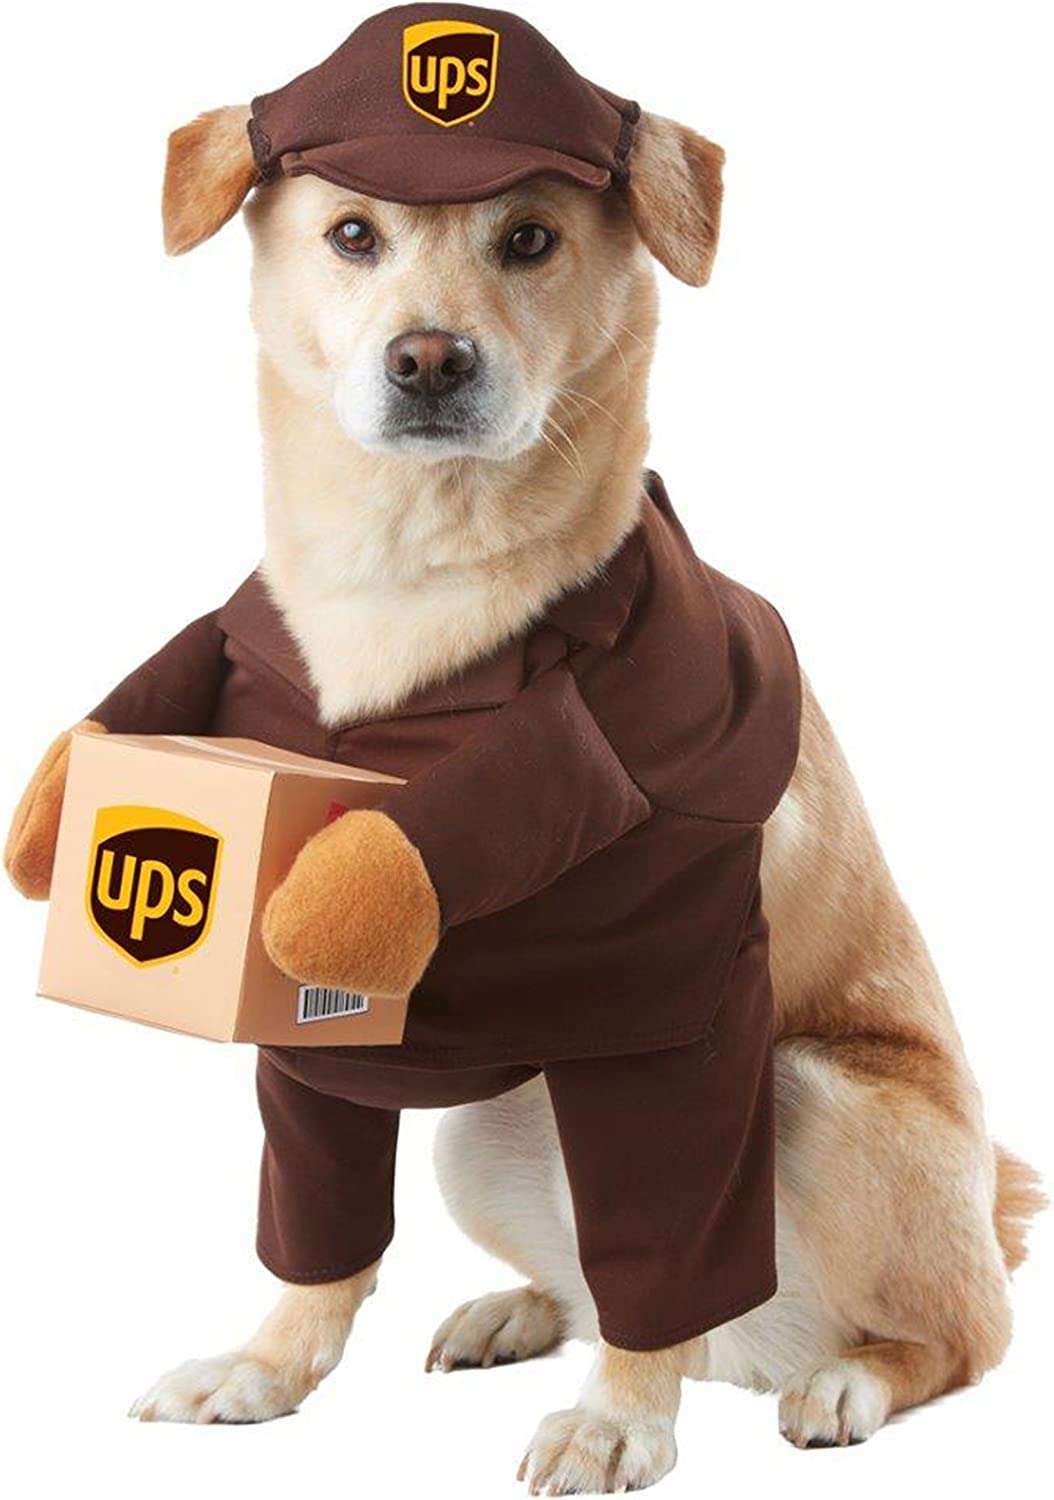 UPS dog